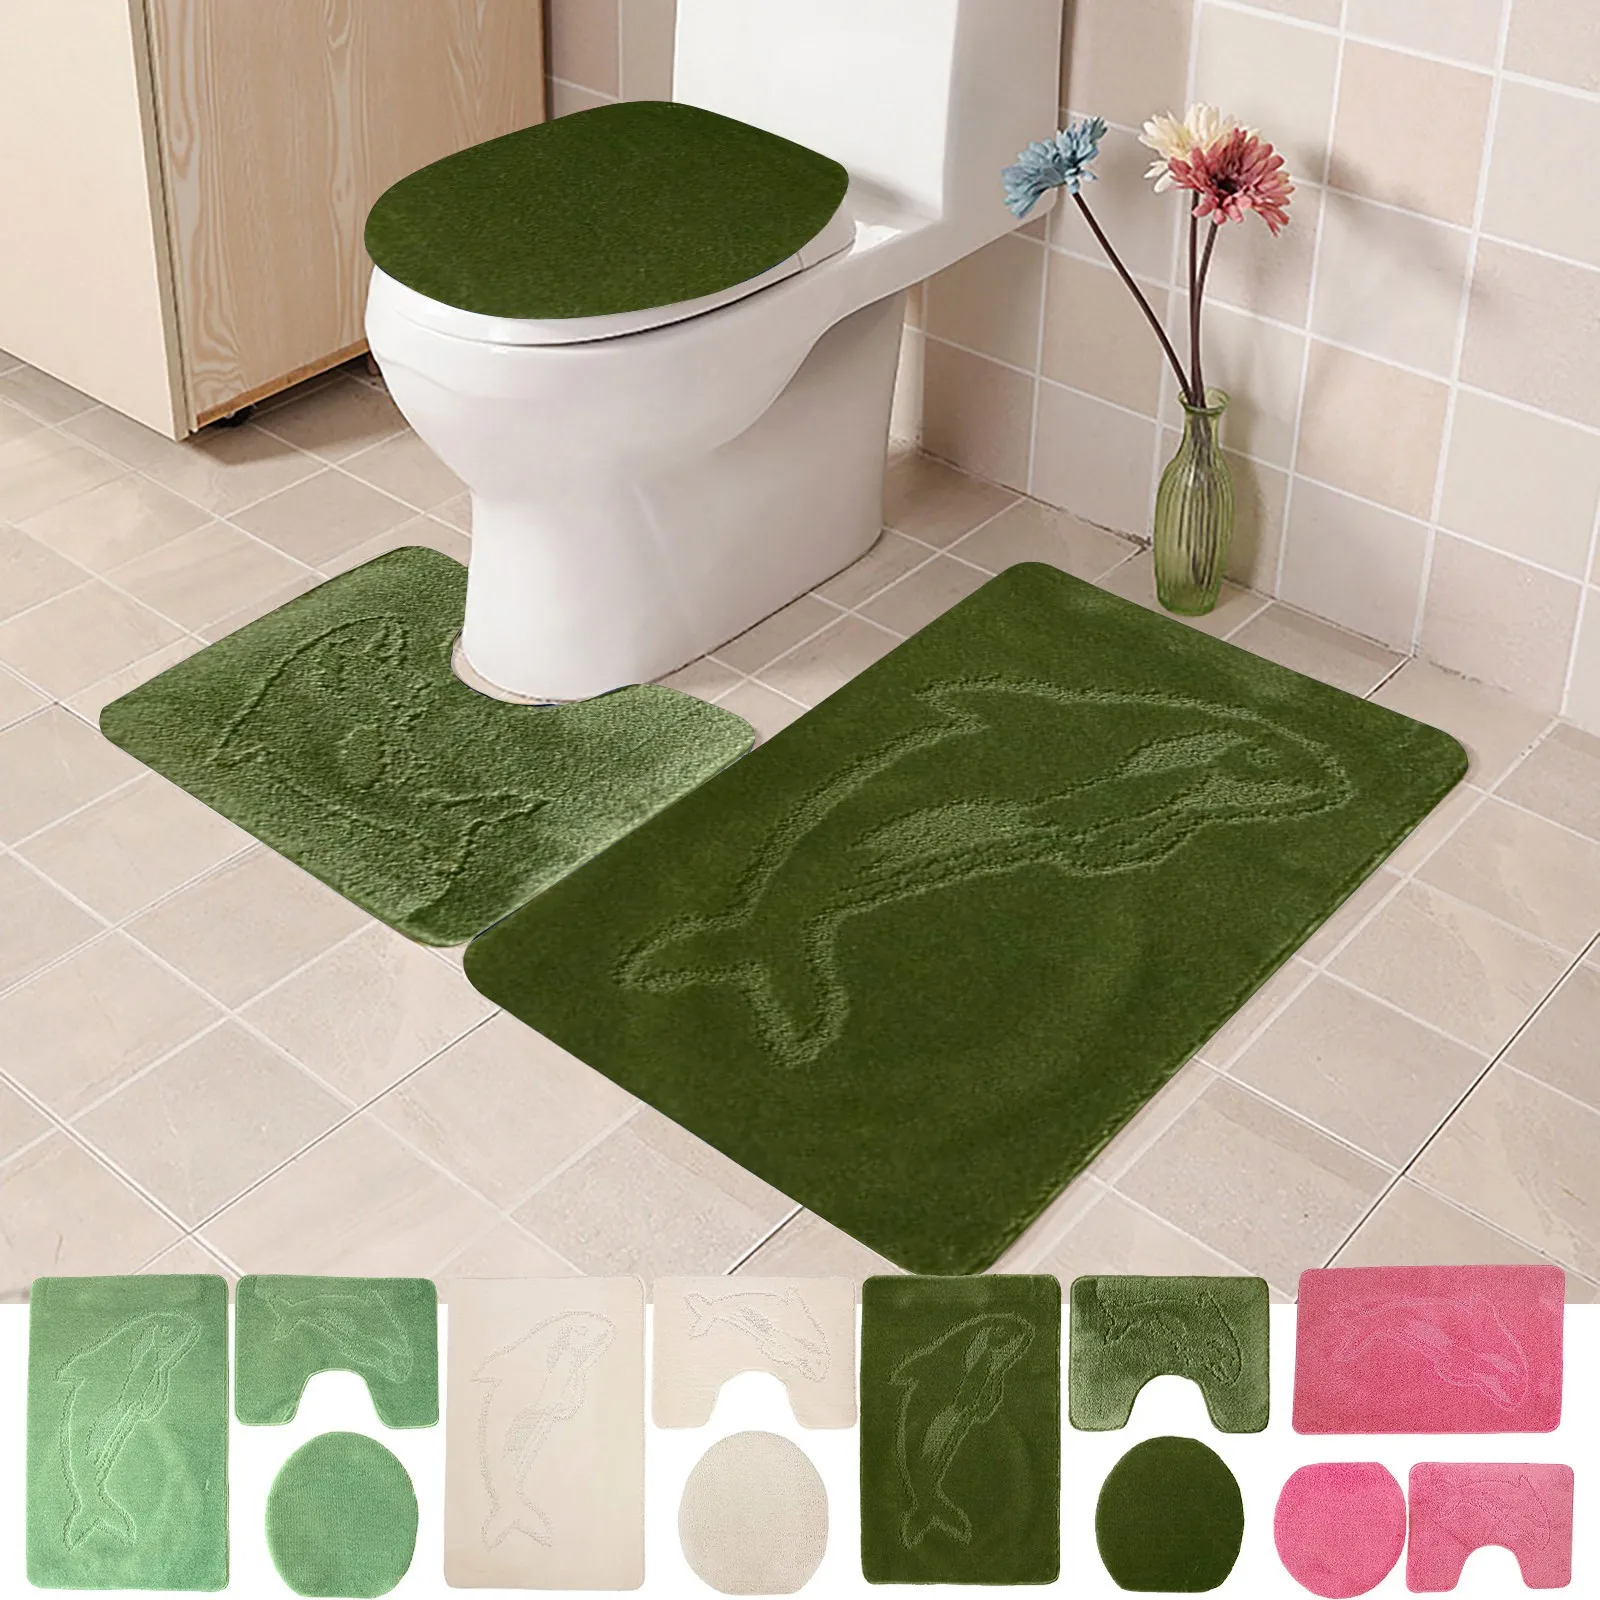 3pcs Non-Slip Bathroom Rug Bath Mat Contour Toilet Seat Lid Cover Set Home Decor 